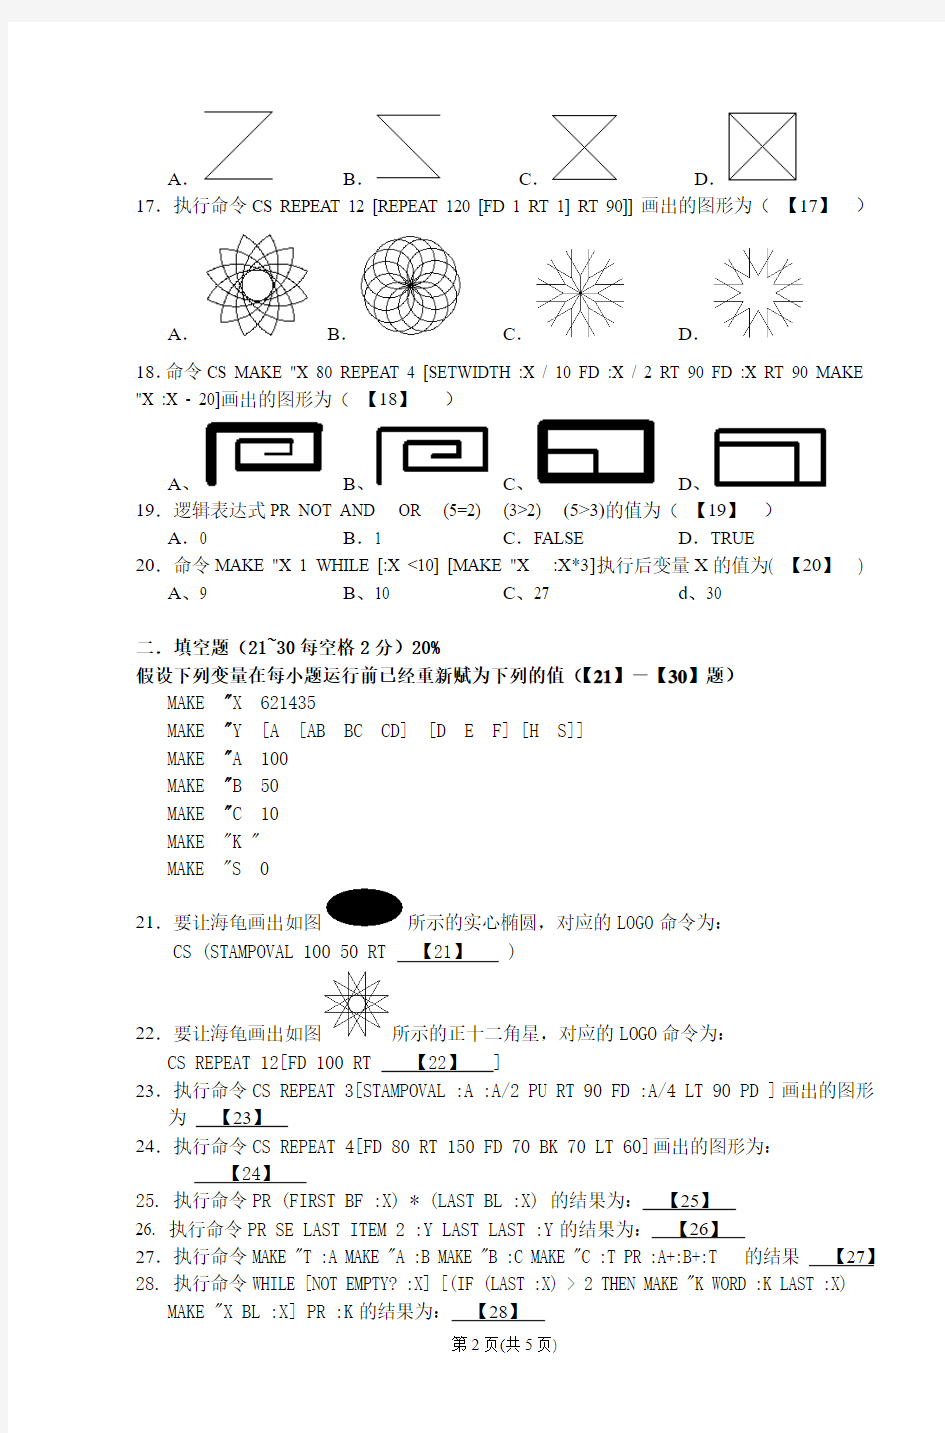 2013年厦门市小学生计算机LOGO语言竞赛试卷(最新稿)